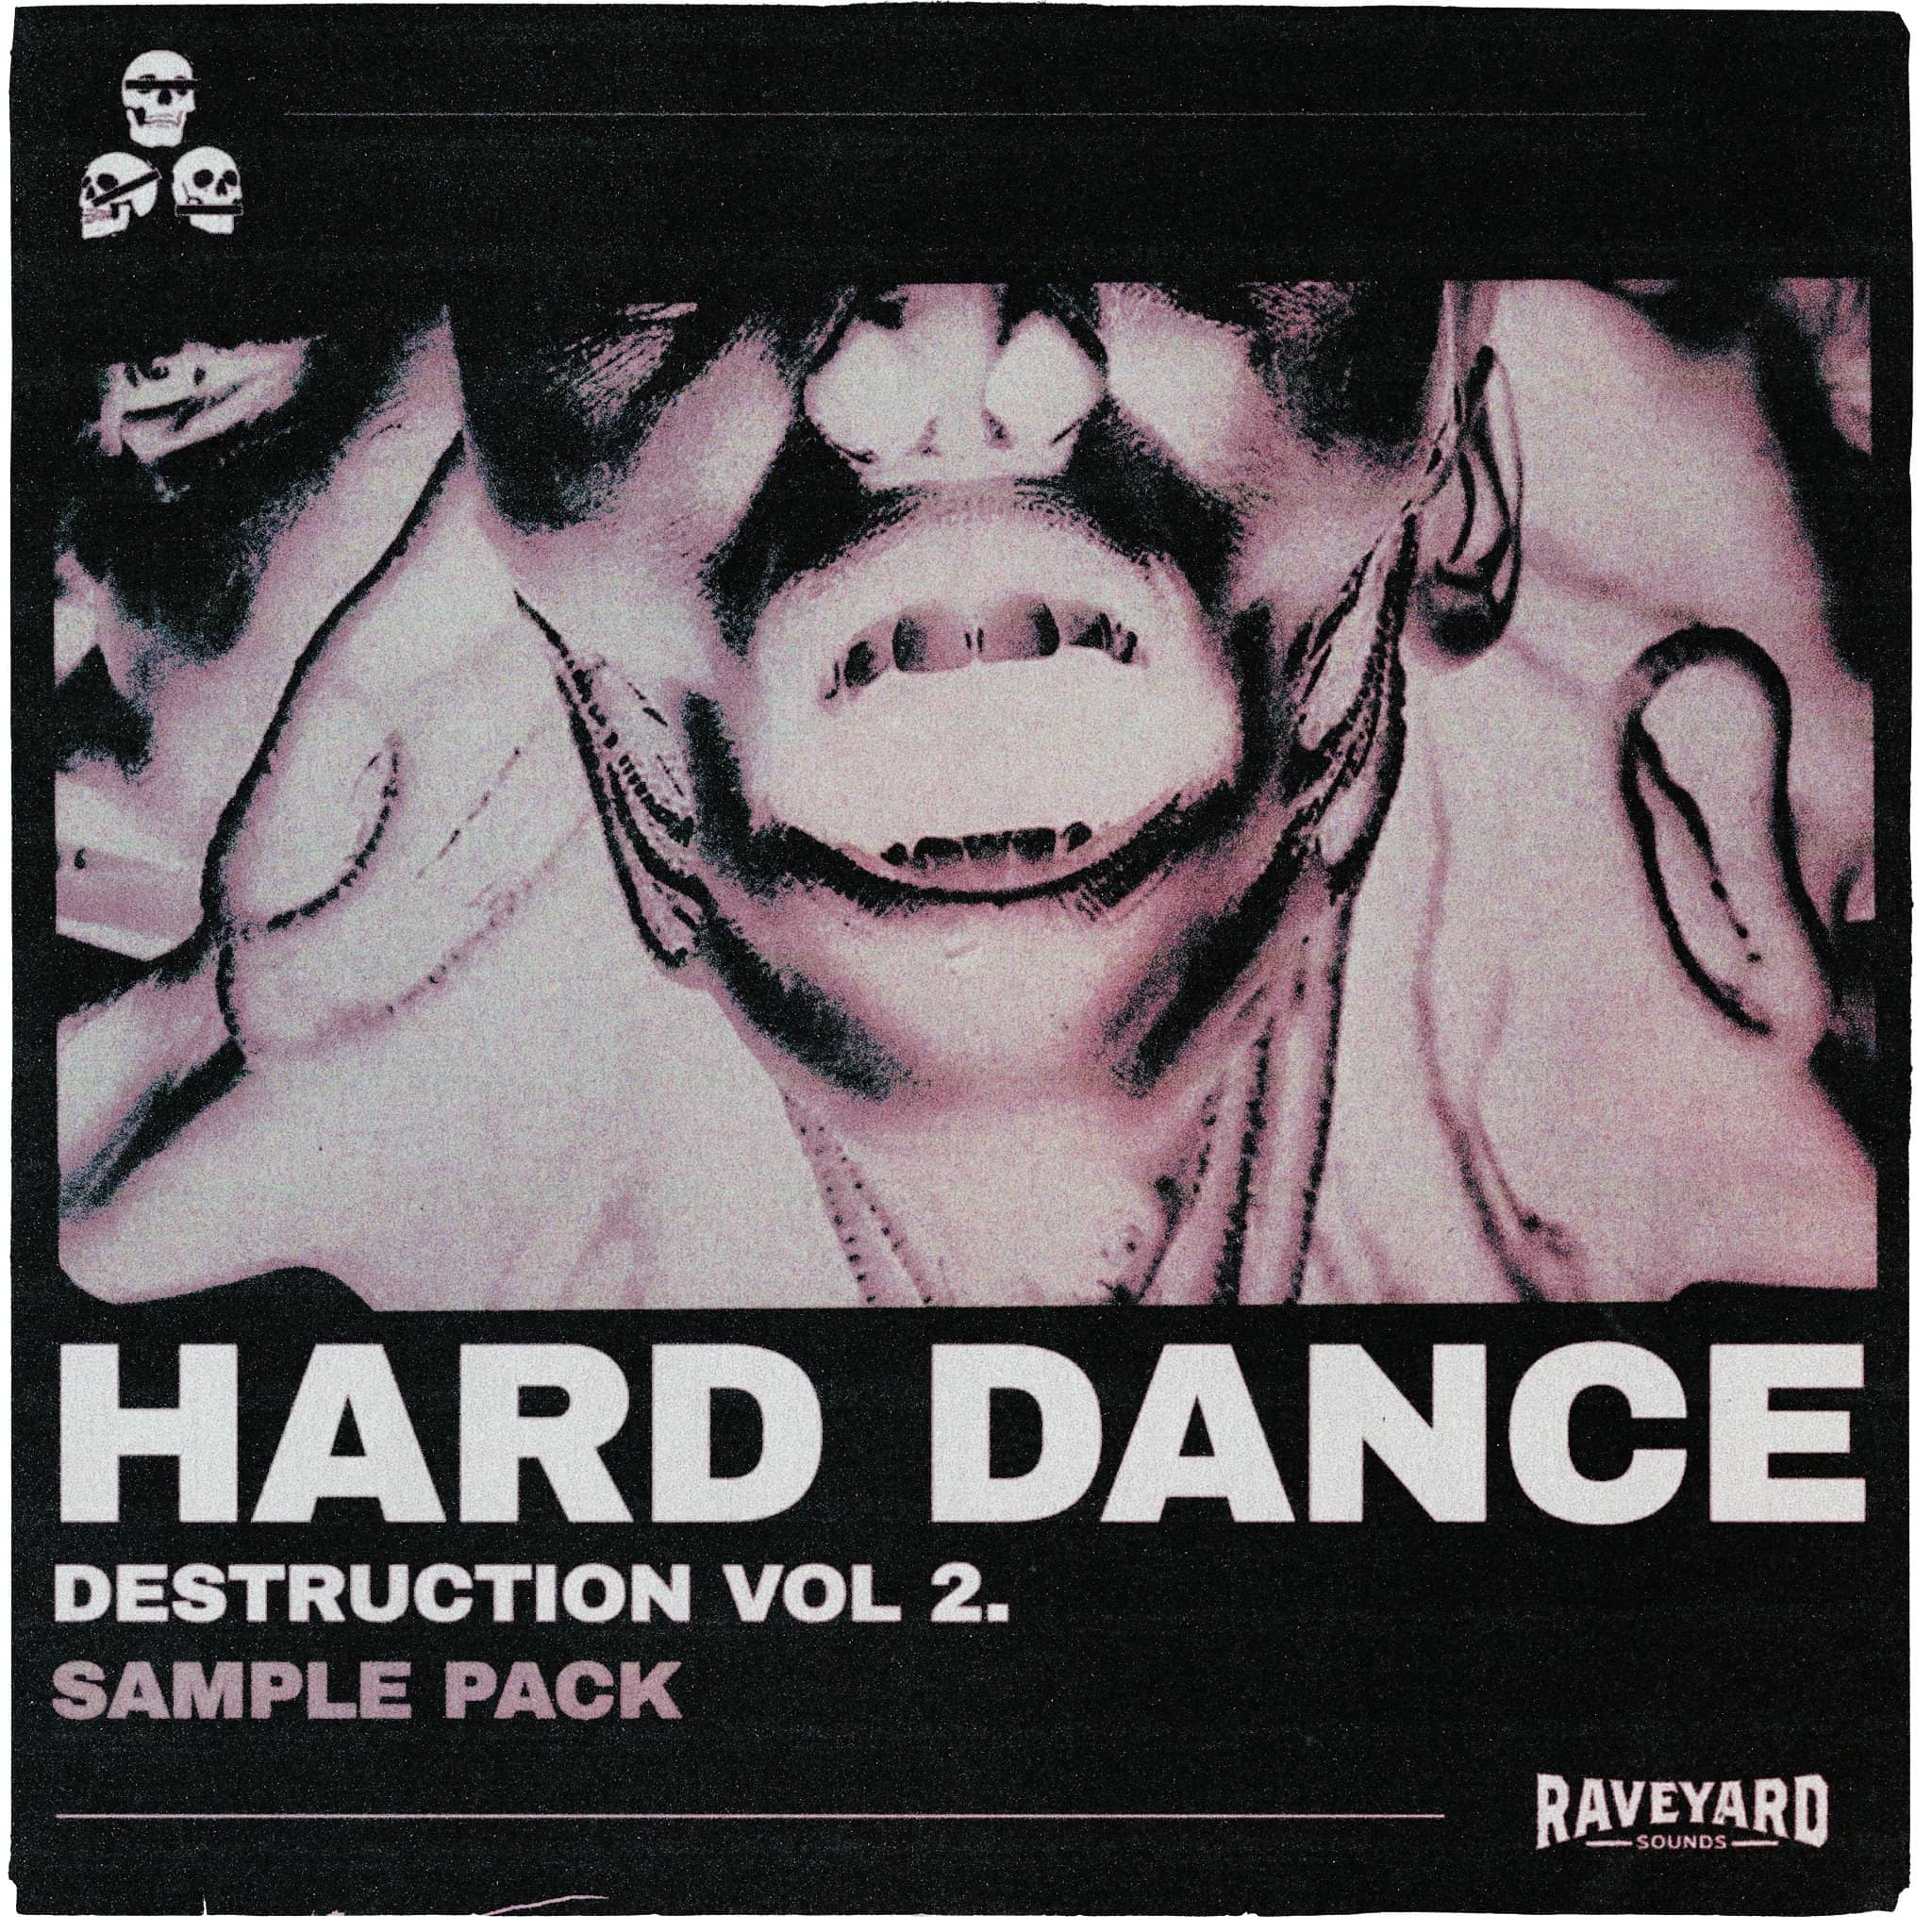 Hard Dance Destruction Vol. 2 - Sample Pack - Raveyard Sounds